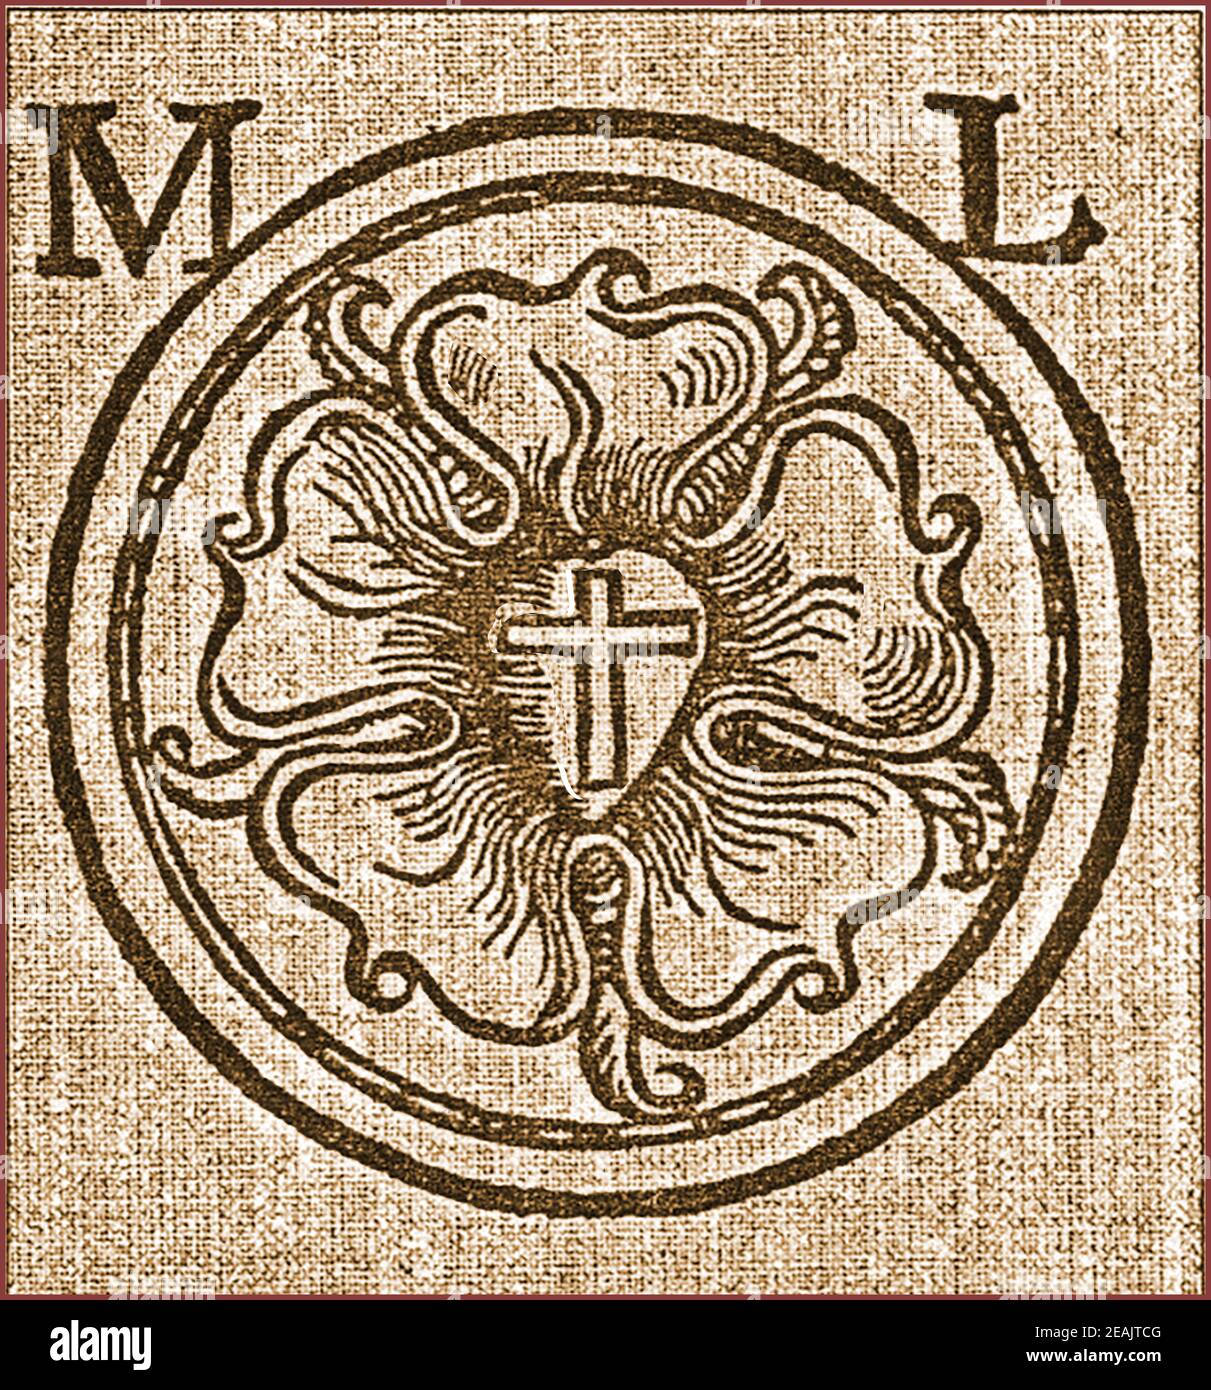 Croix rosercienne de Rose sur les bras de Martin Luther - une représentation du début du XVIe siècle du symbolisme rosercien comprenant une rose sur une croix. Le symbolisme est largement utilisé dans la magie, la religion mysticis, le gnosticisme et bien sûr dans l'ordre rosicien. Banque D'Images